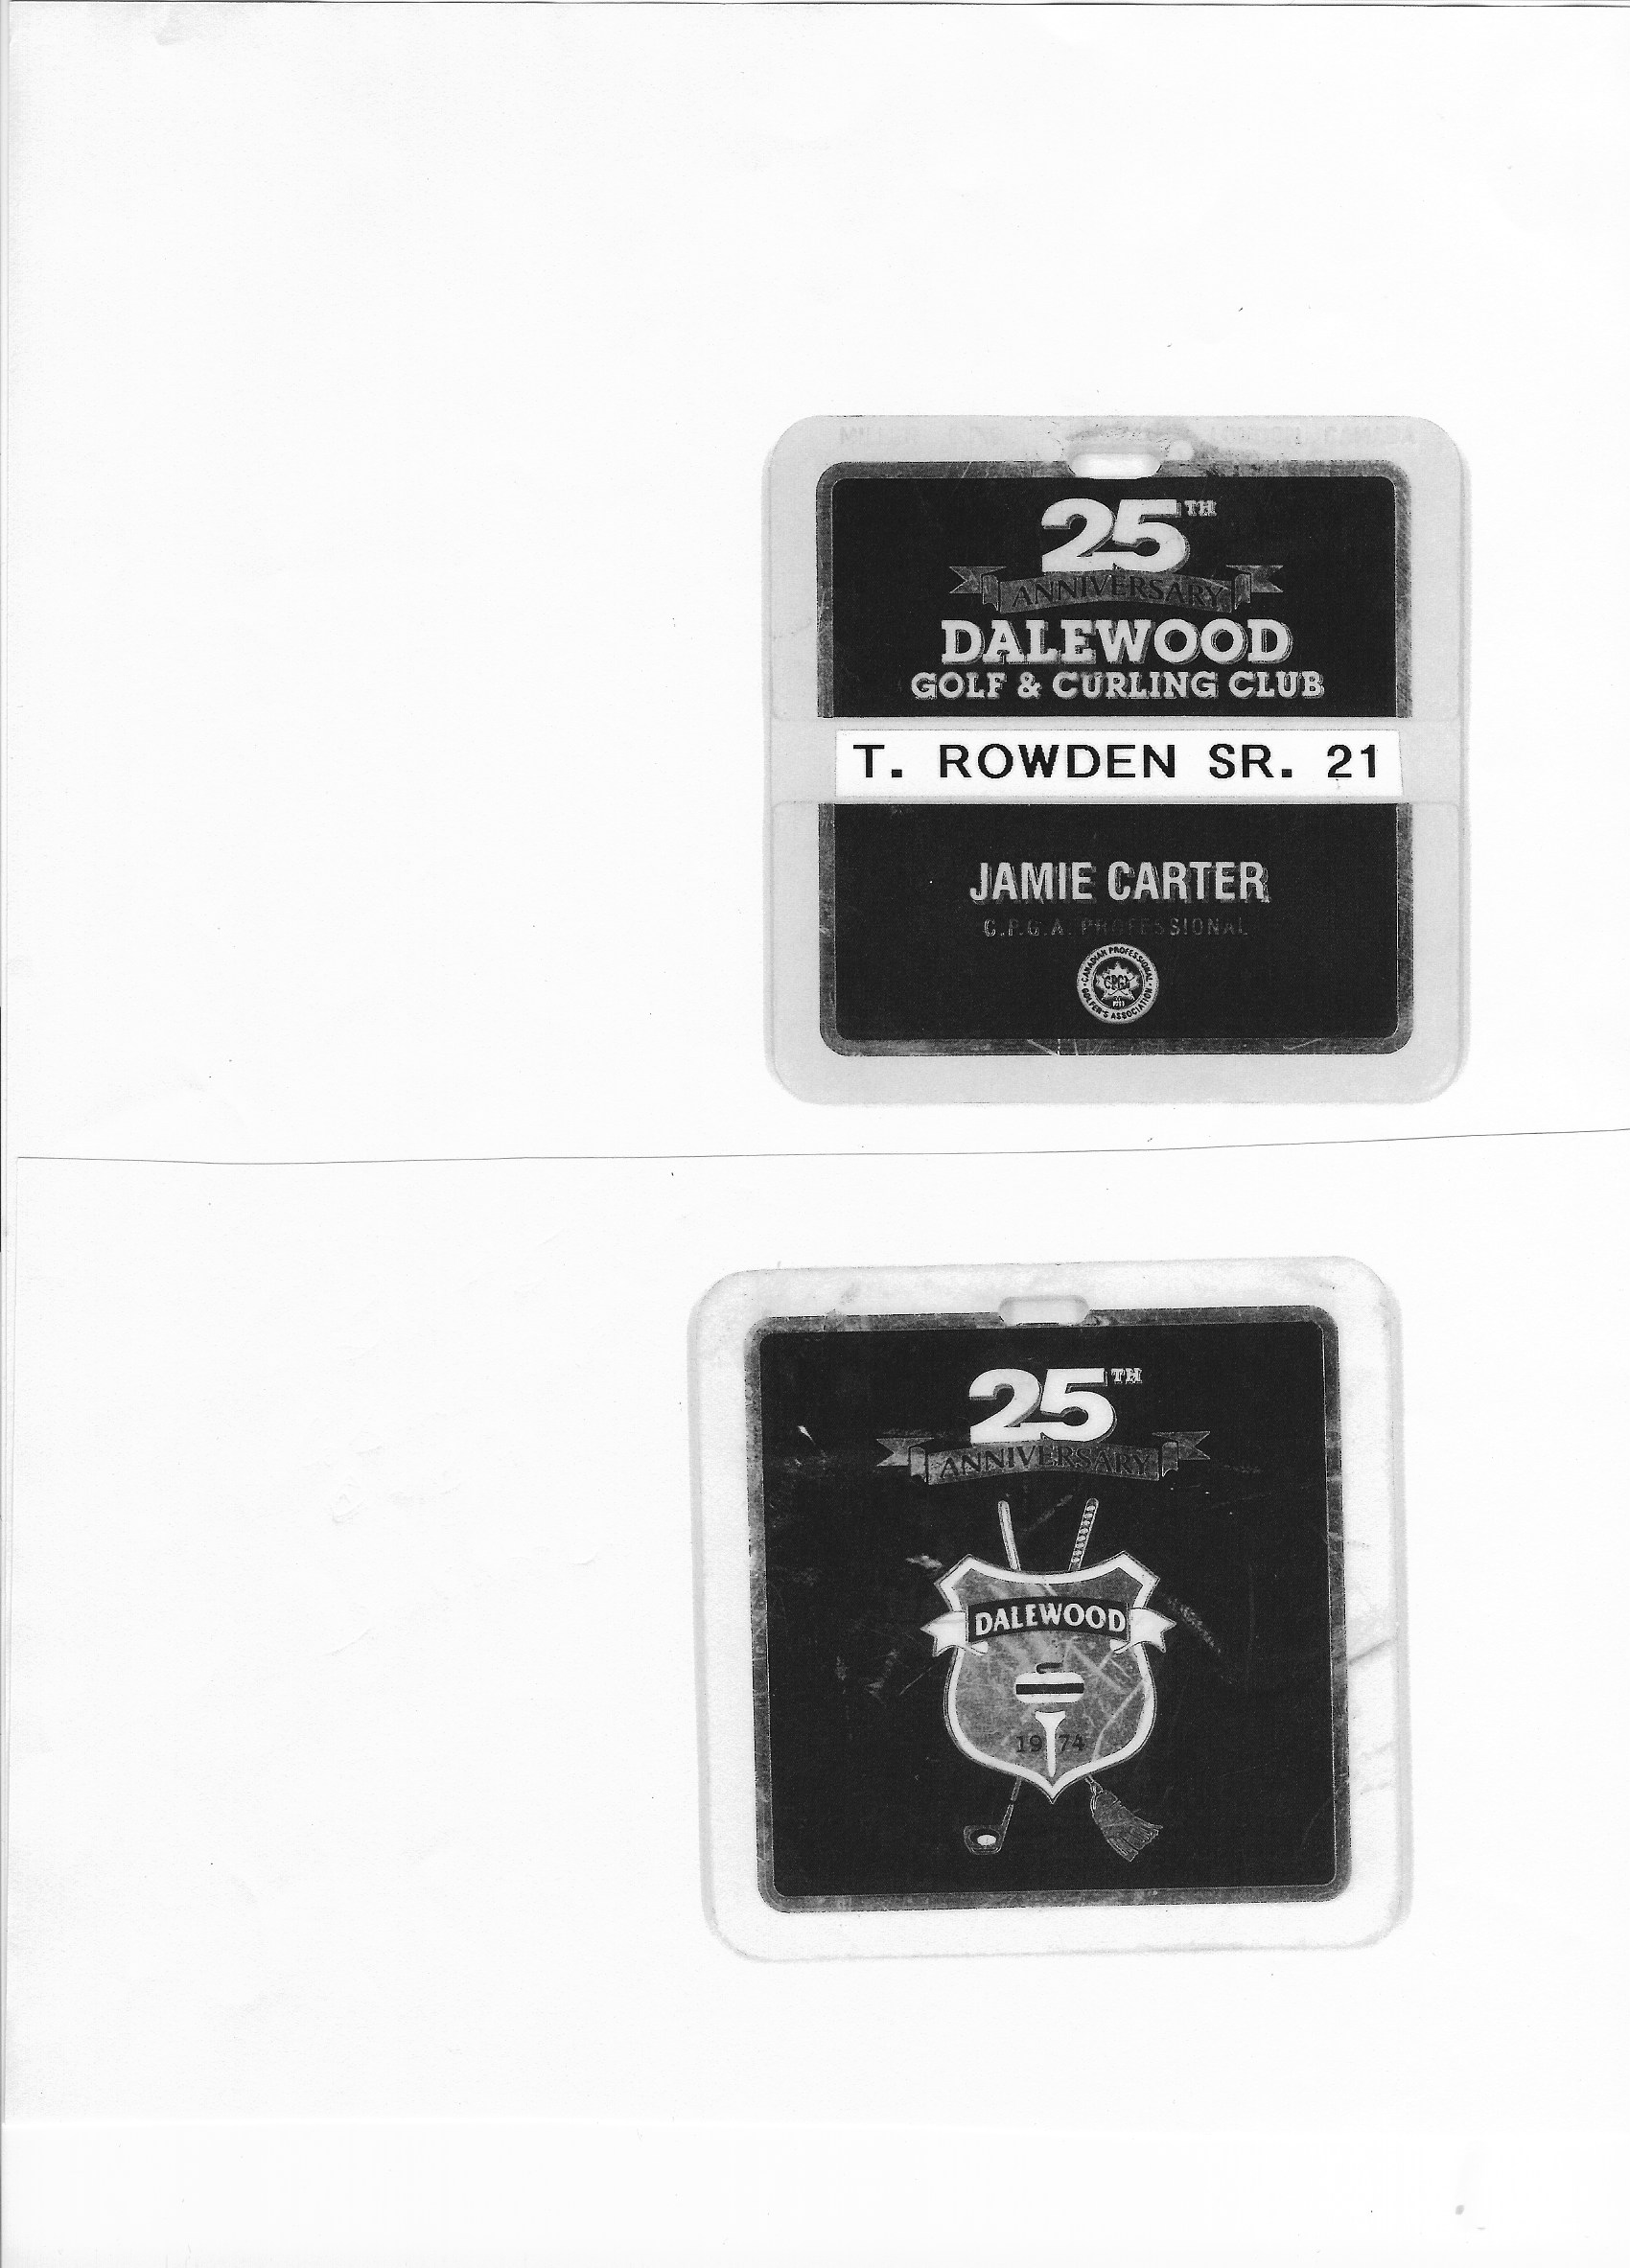 1984-05-01 Golf -Dalewood Golf Card-Ted Rowden